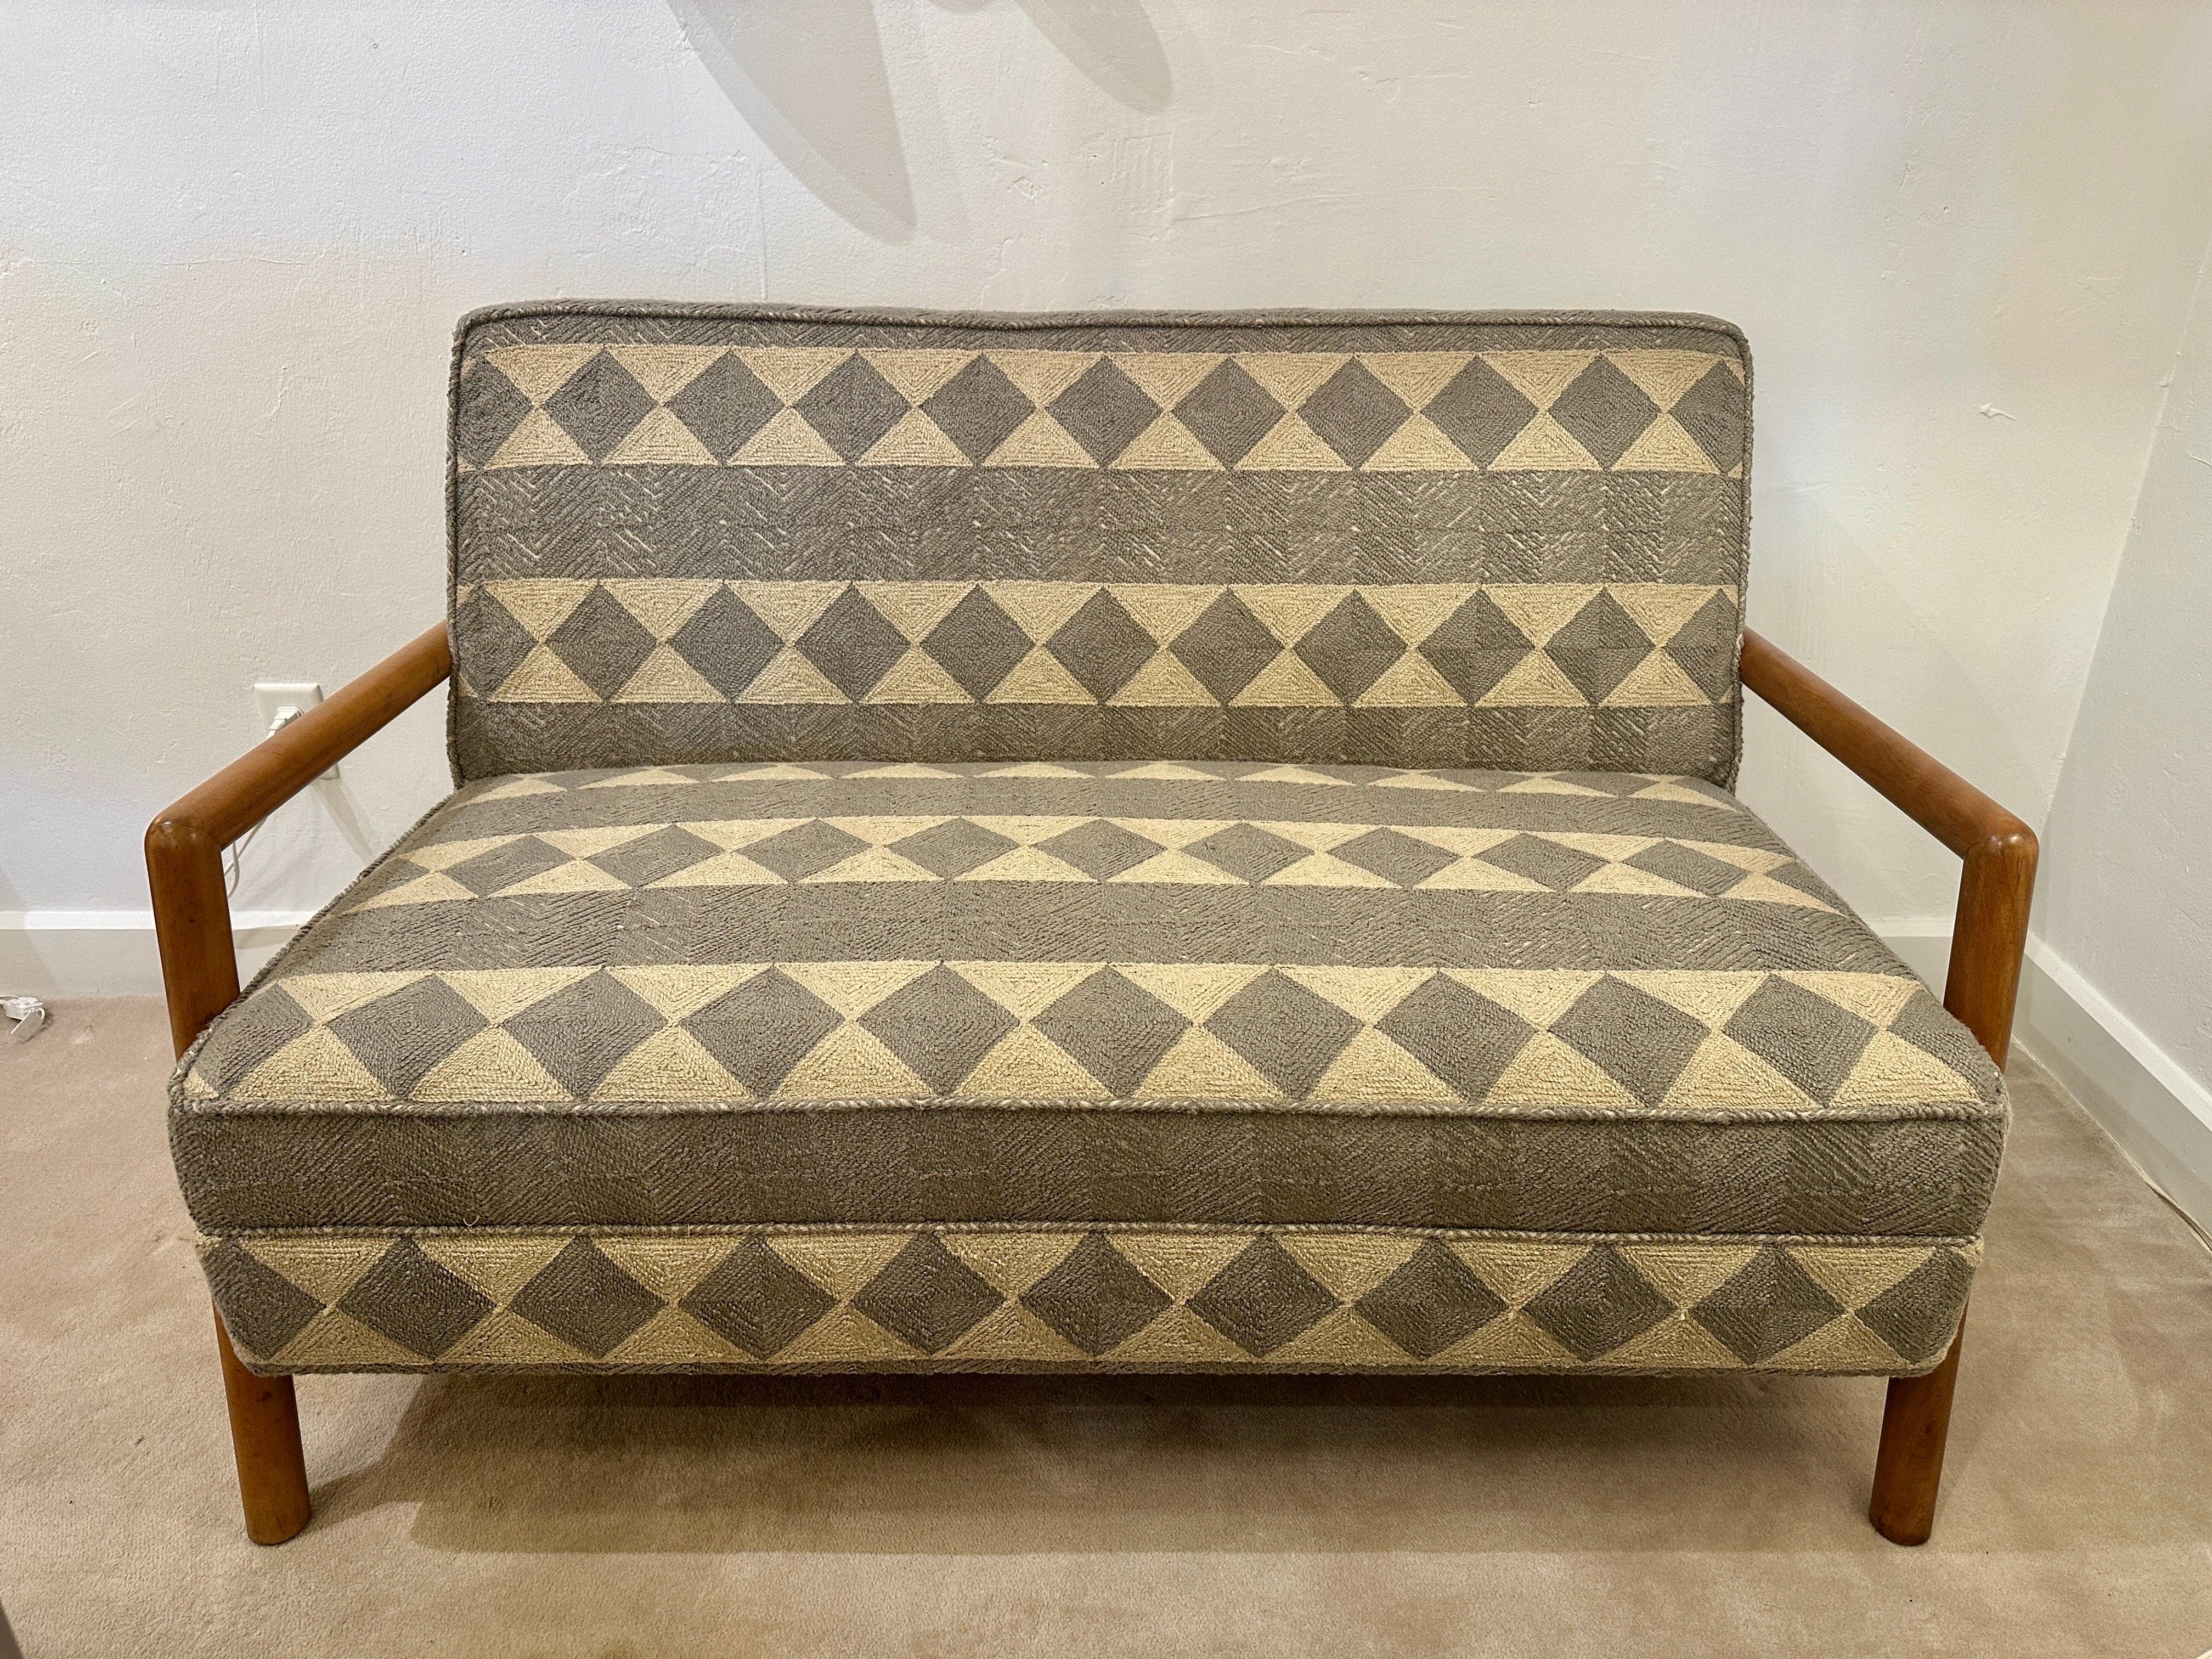 Liegesitz von T.H Robsjohn Gibbings für Widdicomb. Dieses Sofa hat einen abgerundeten Rahmen aus massivem, gebleichtem Walnussholz mit Armlehnen. Die Kissen wurden neu mit einem grauen und cremefarbenen, dicht gewebten Stoff im Tribal-Stil